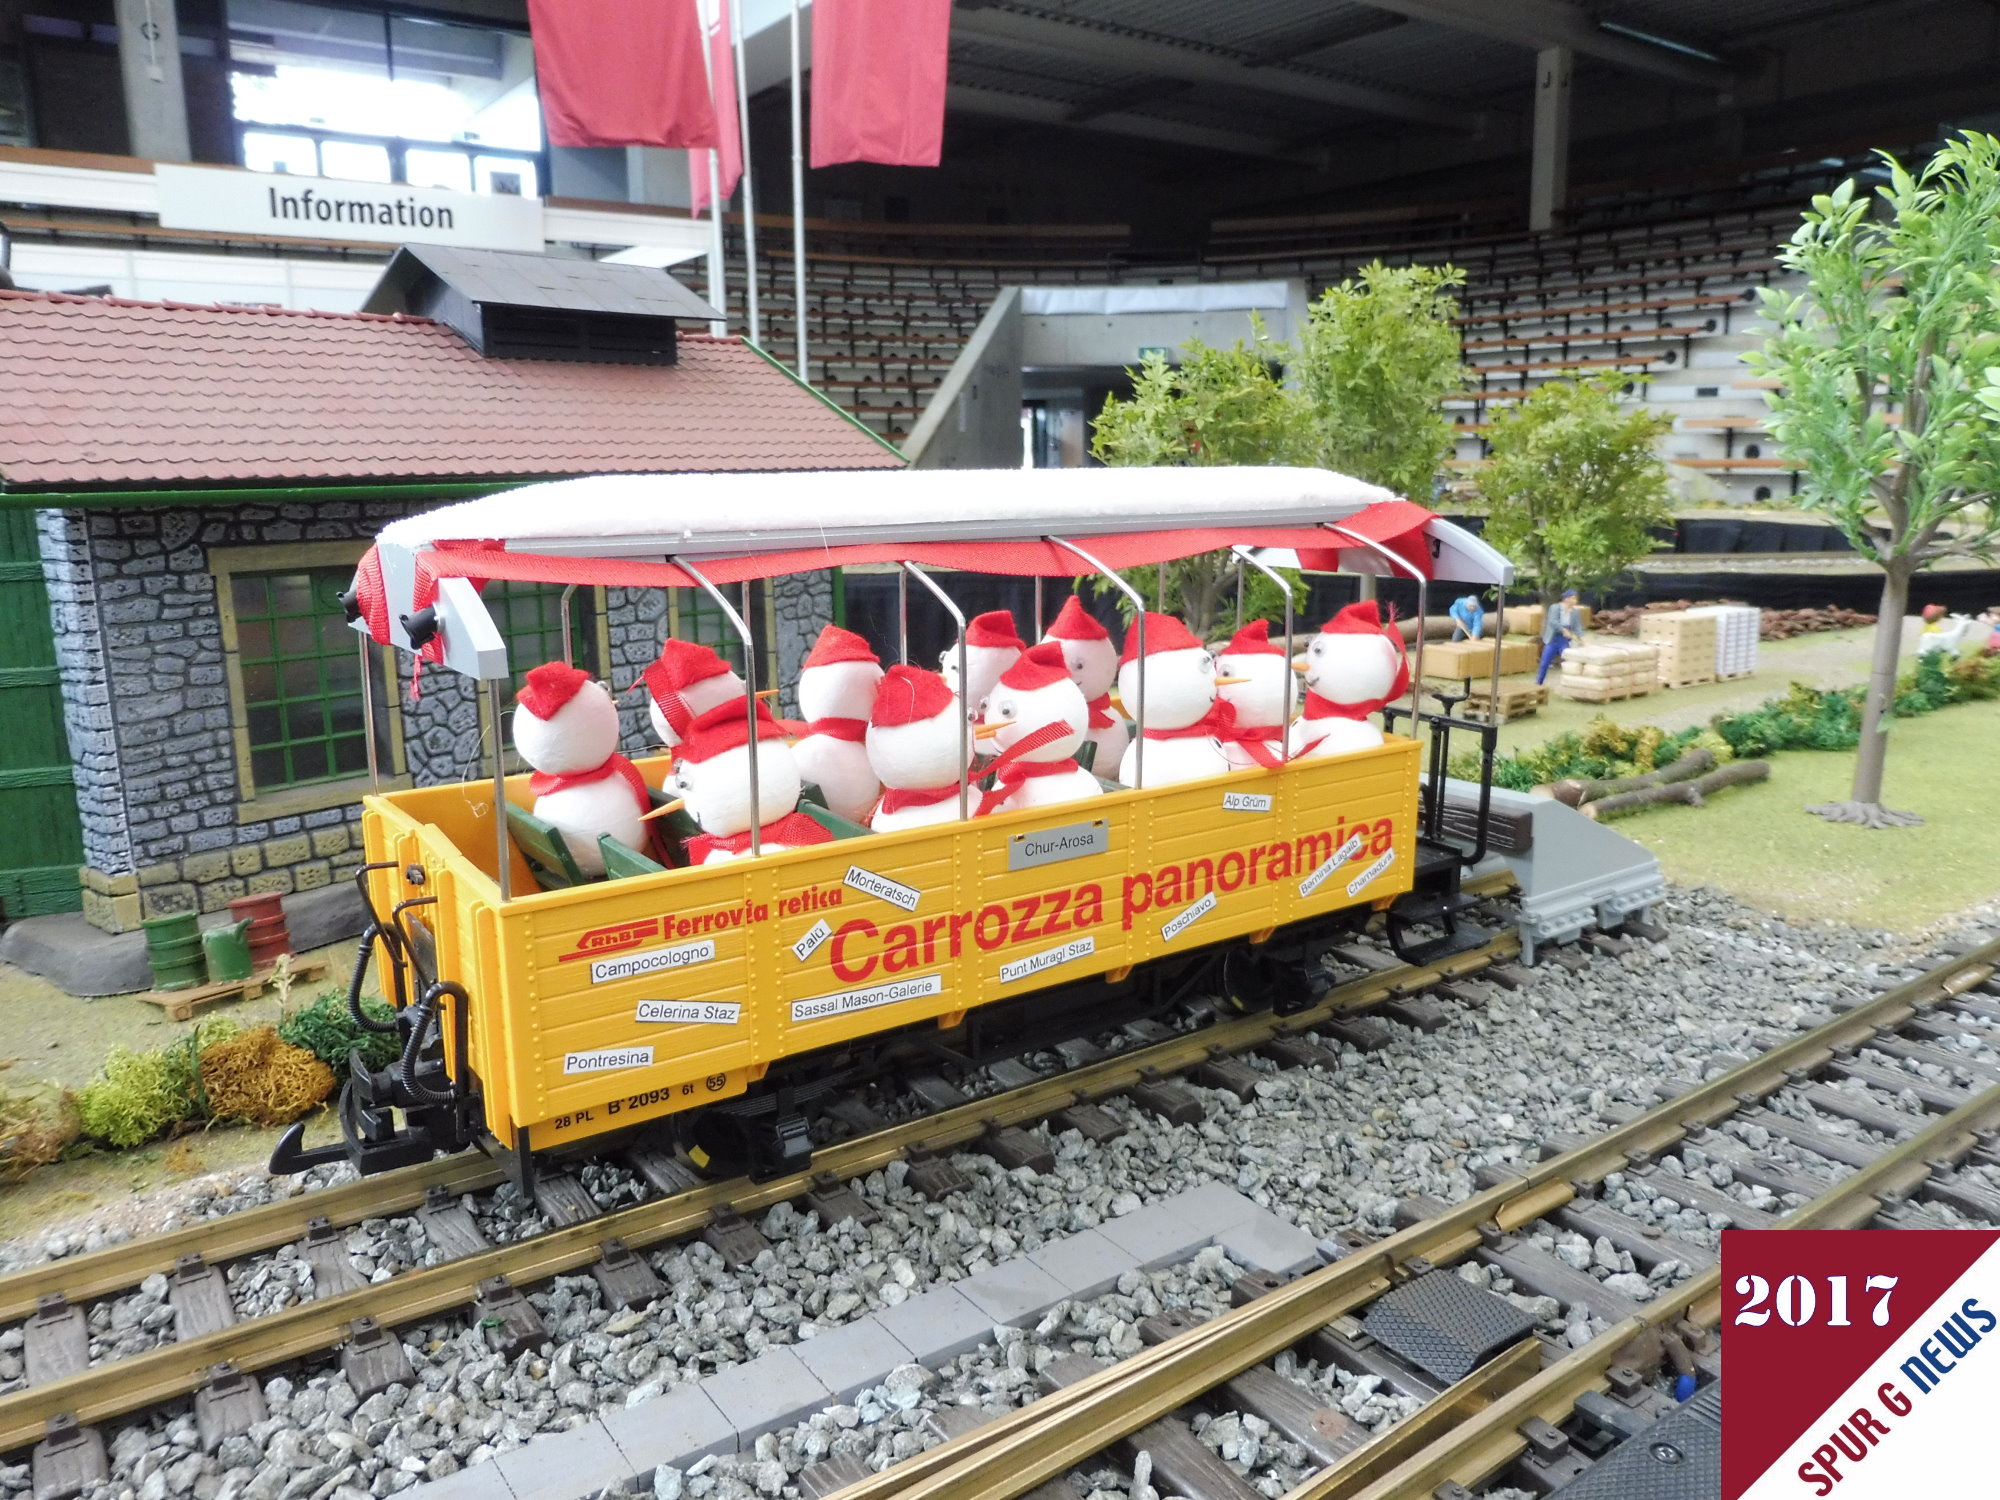 Die Modellbahngruppe der Wuppertaler Stadtwerke hat kurzerhand Weihnachten schon im September zelebriert. Die Schneemnner machen schon mal zur Probe einen Ausflug im Carrozza panoramica der RhB. Natrlich unterm Hallendach in der EWS Arena.  